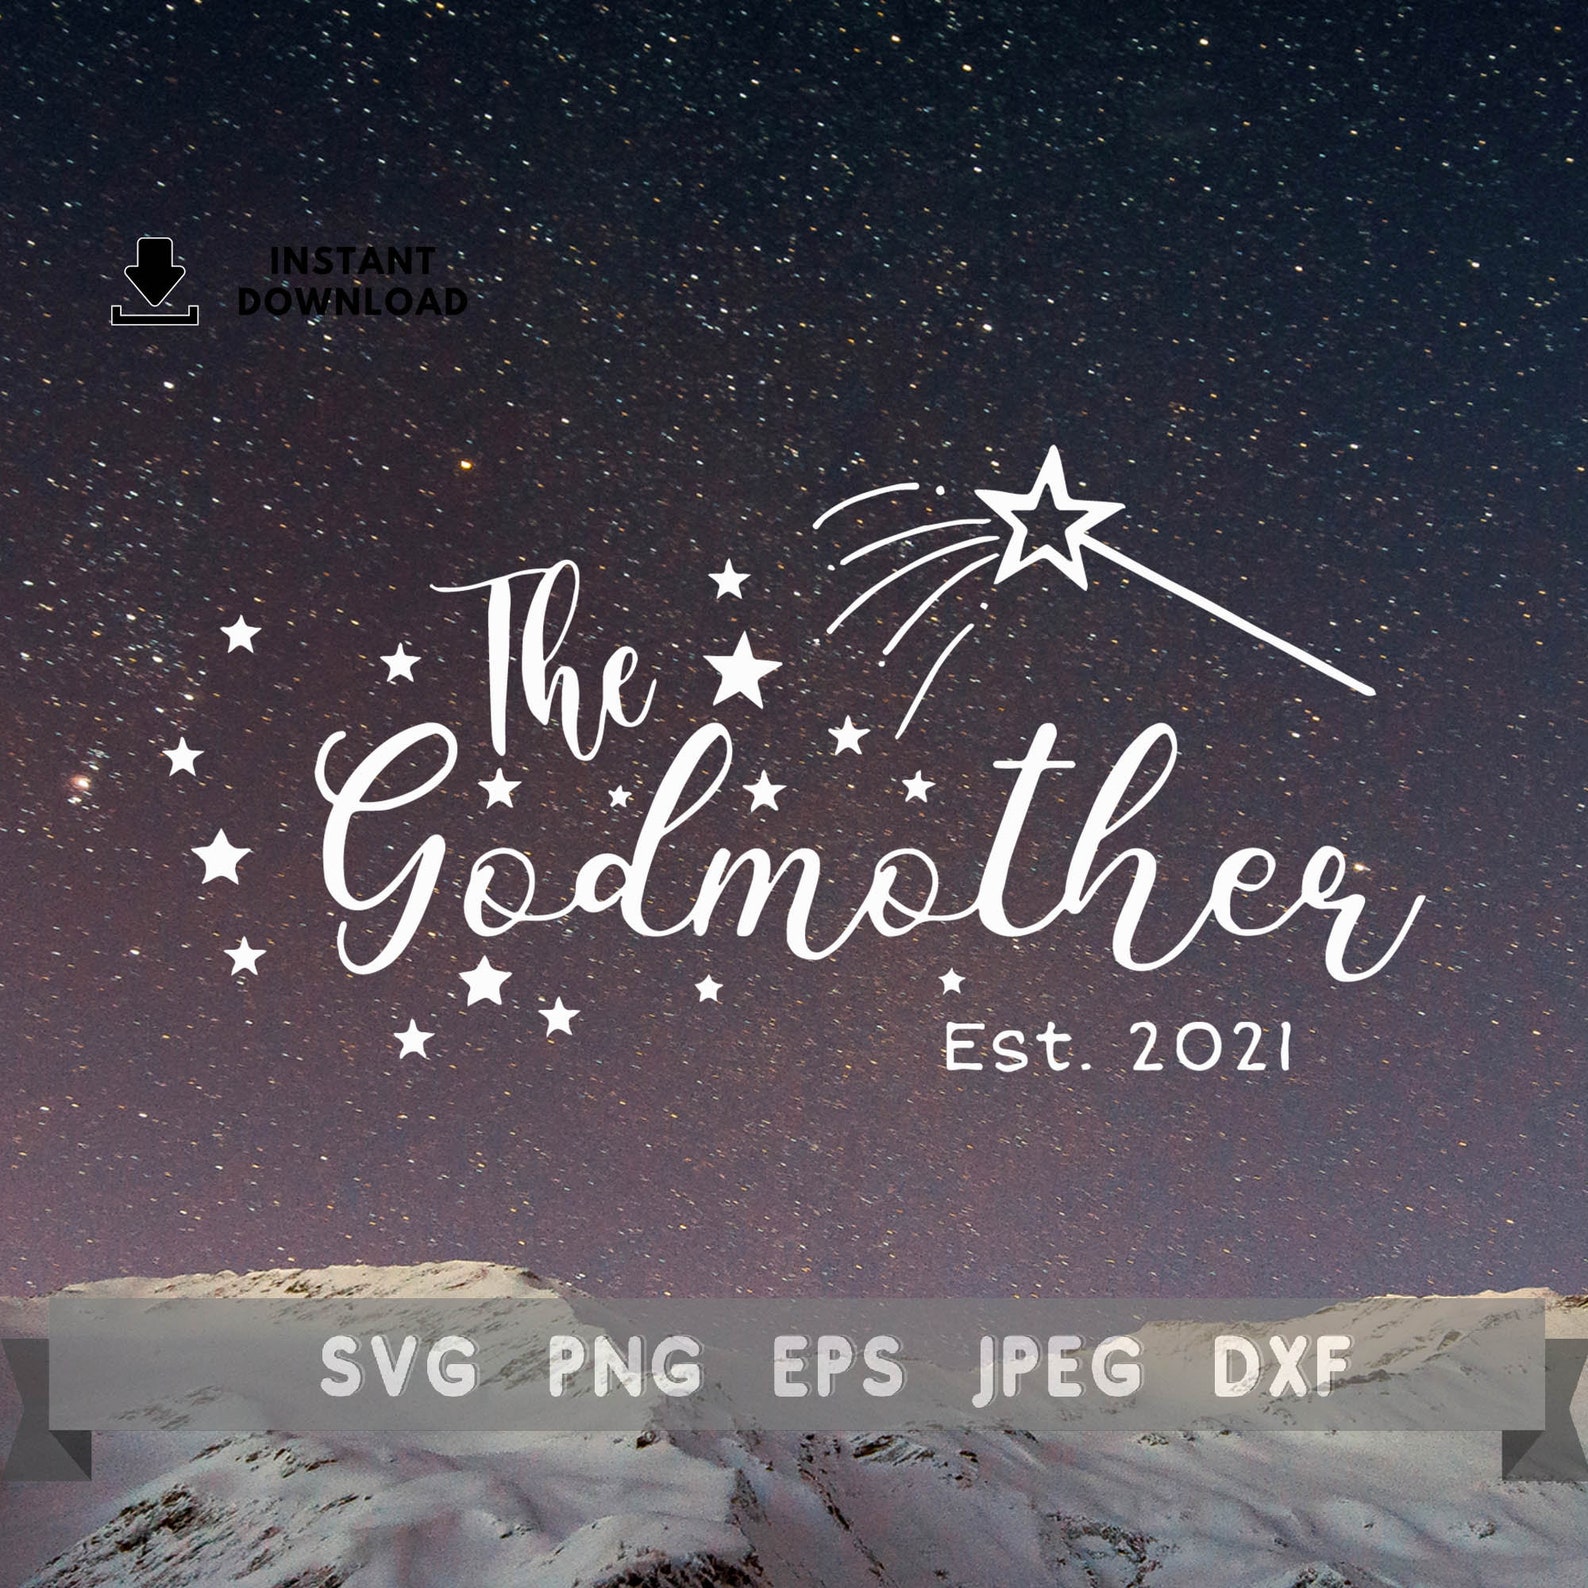 Download The Godmother svg Godmother Established 2021 SVG Baptism | Etsy